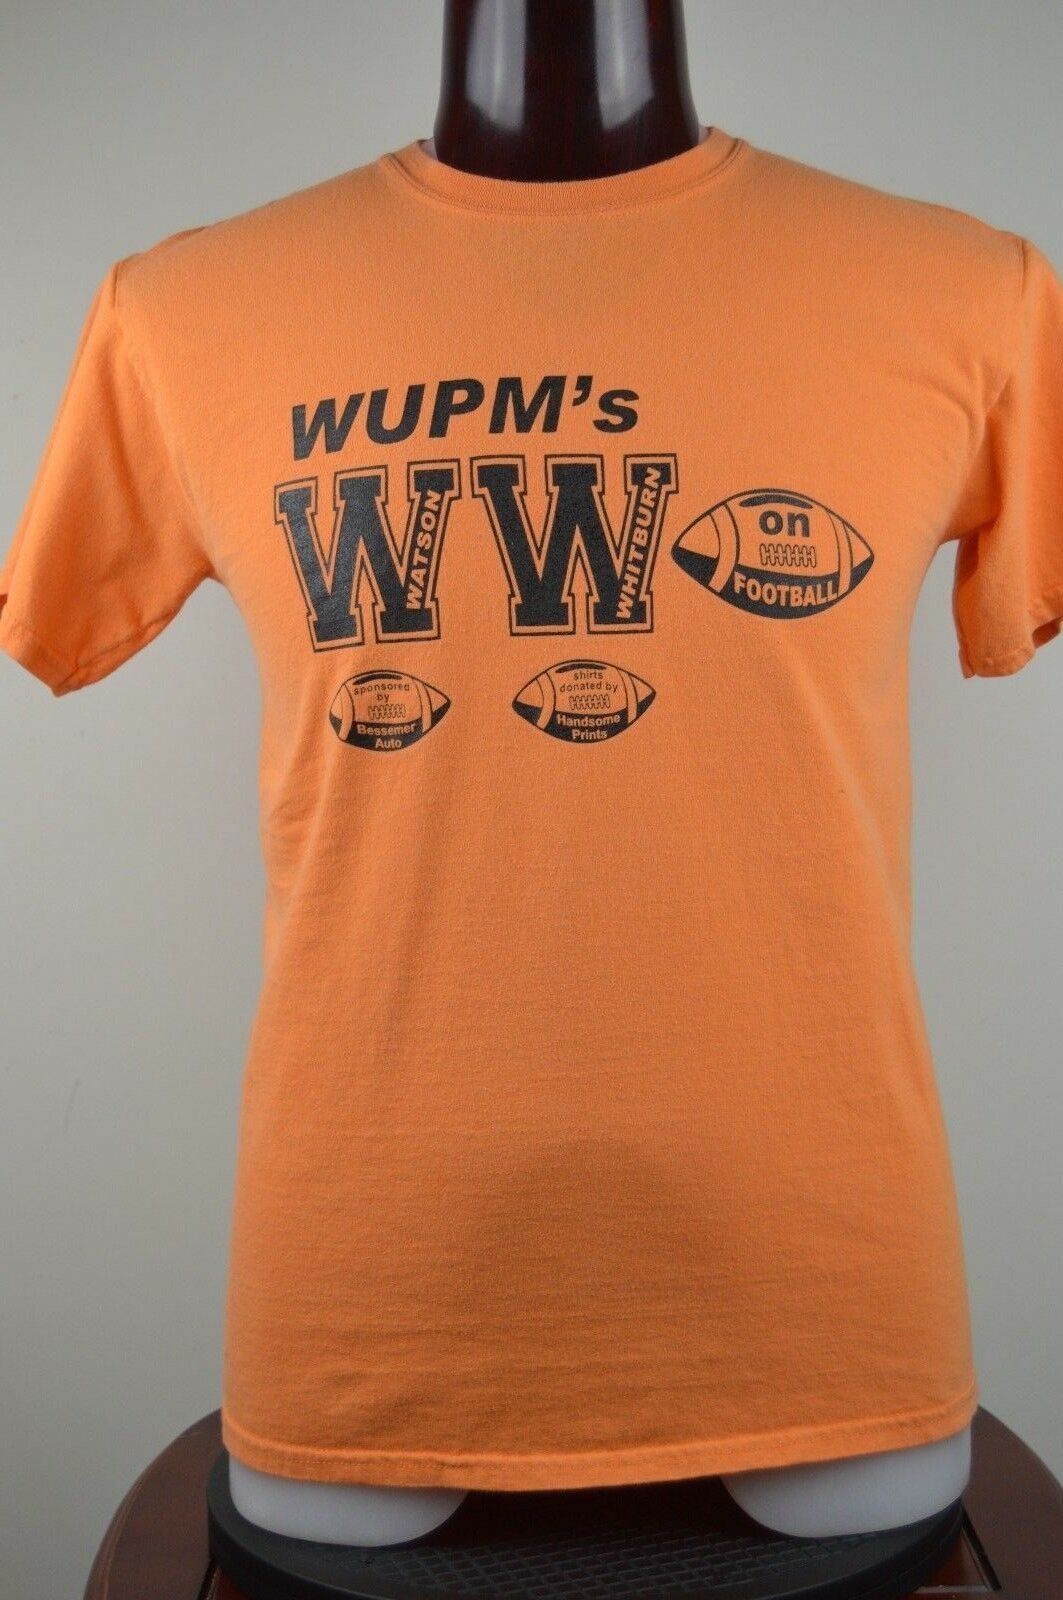 Primary image for WUPM FM Radio Ironwood Mi Watson and Whitburn on Football M Orange T Shirt  